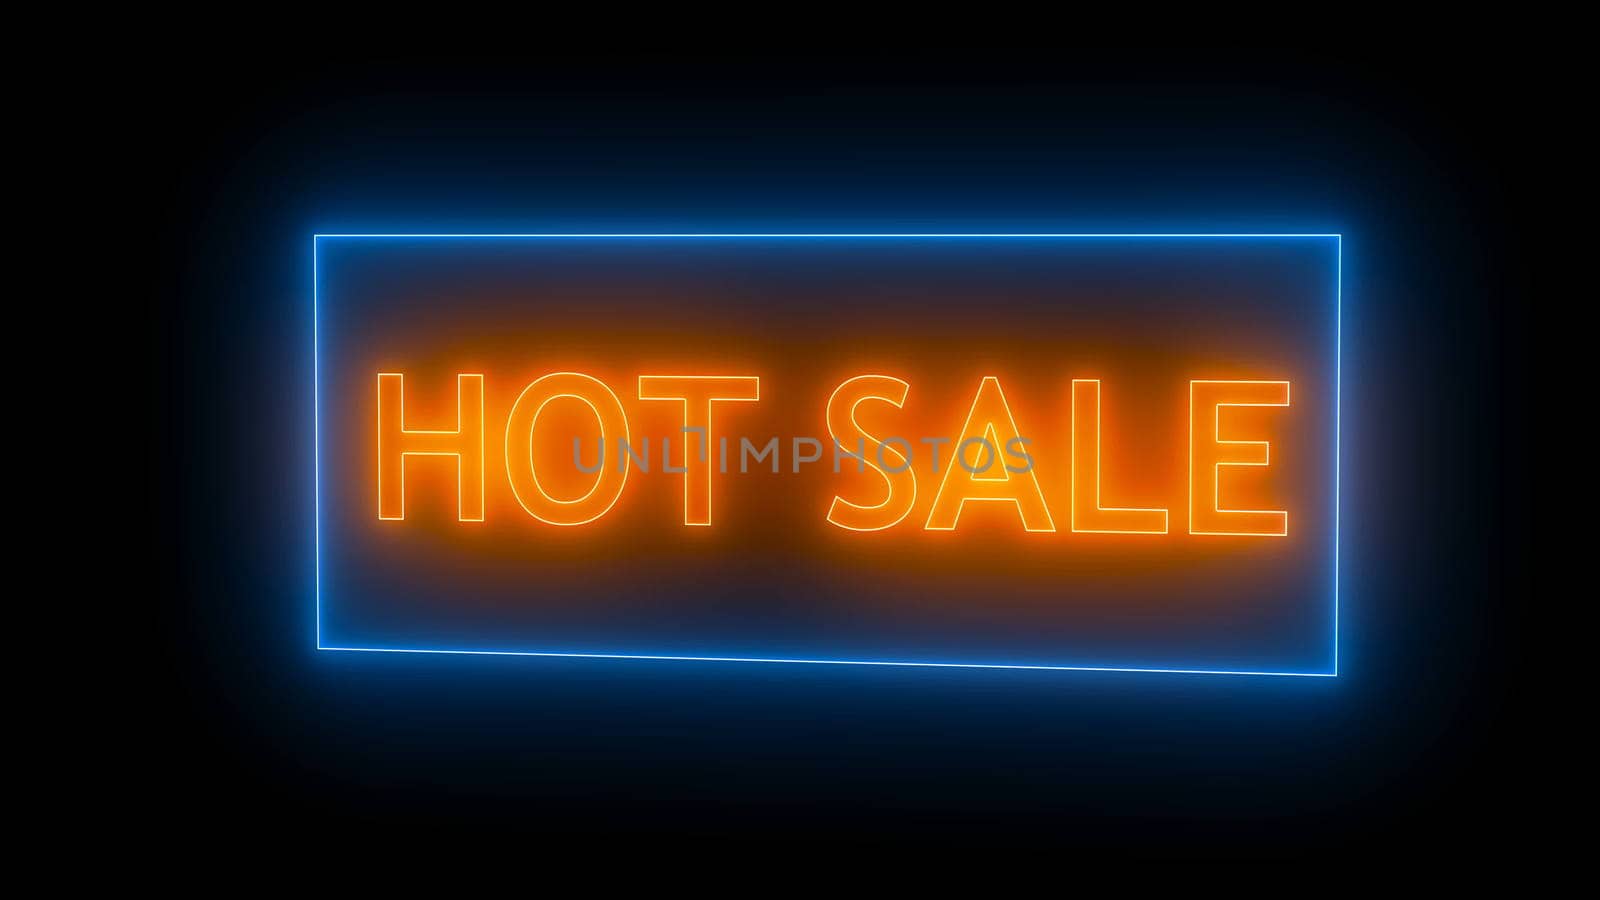 Neon hot sale sign. Digital illustration. 3d rendering